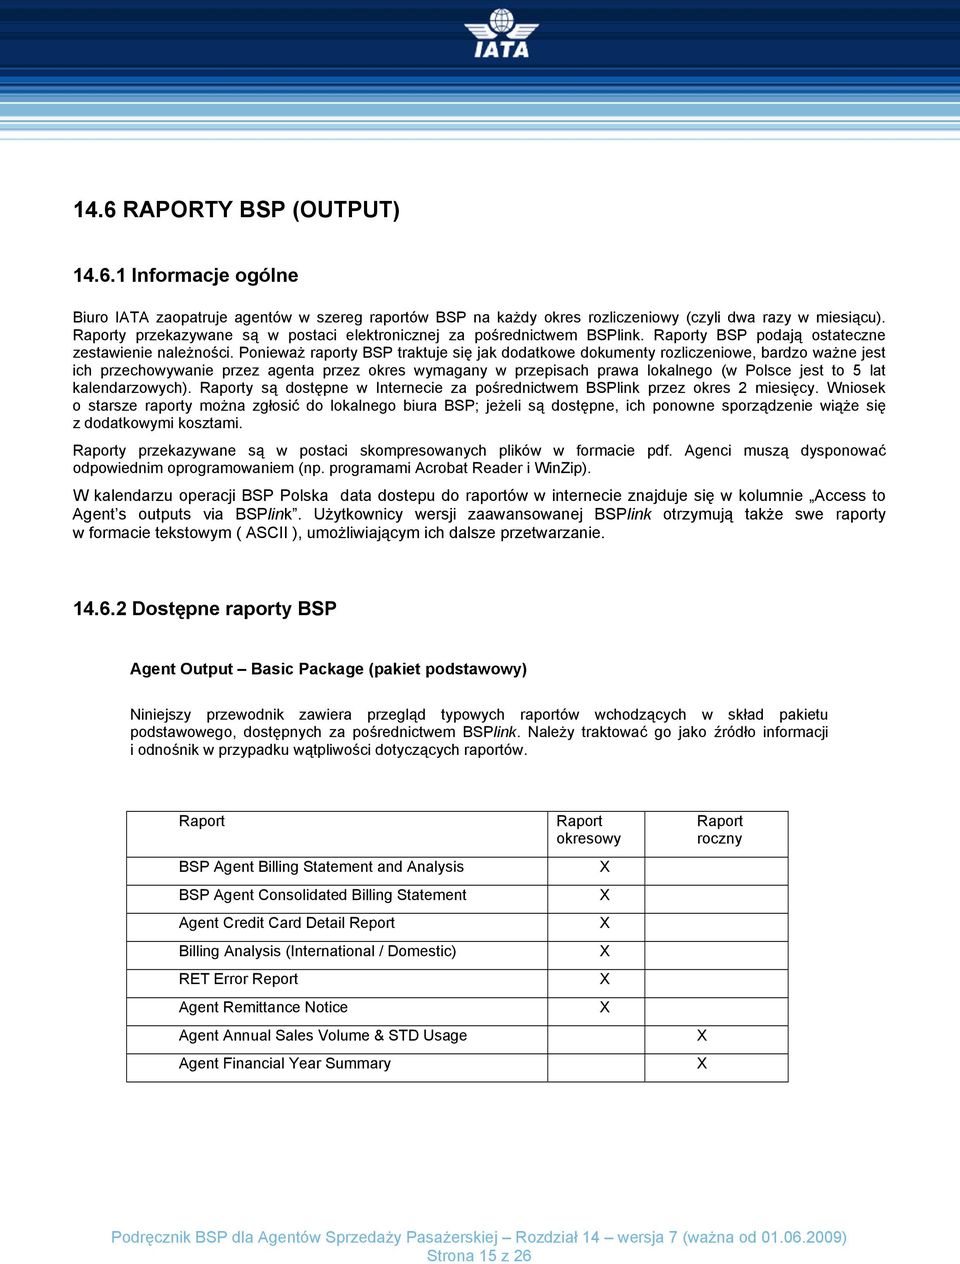 Ponieważ raporty BSP traktuje się jak dodatkowe dokumenty rozliczeniowe, bardzo ważne jest ich przechowywanie przez agenta przez okres wymagany w przepisach prawa lokalnego (w Polsce jest to 5 lat